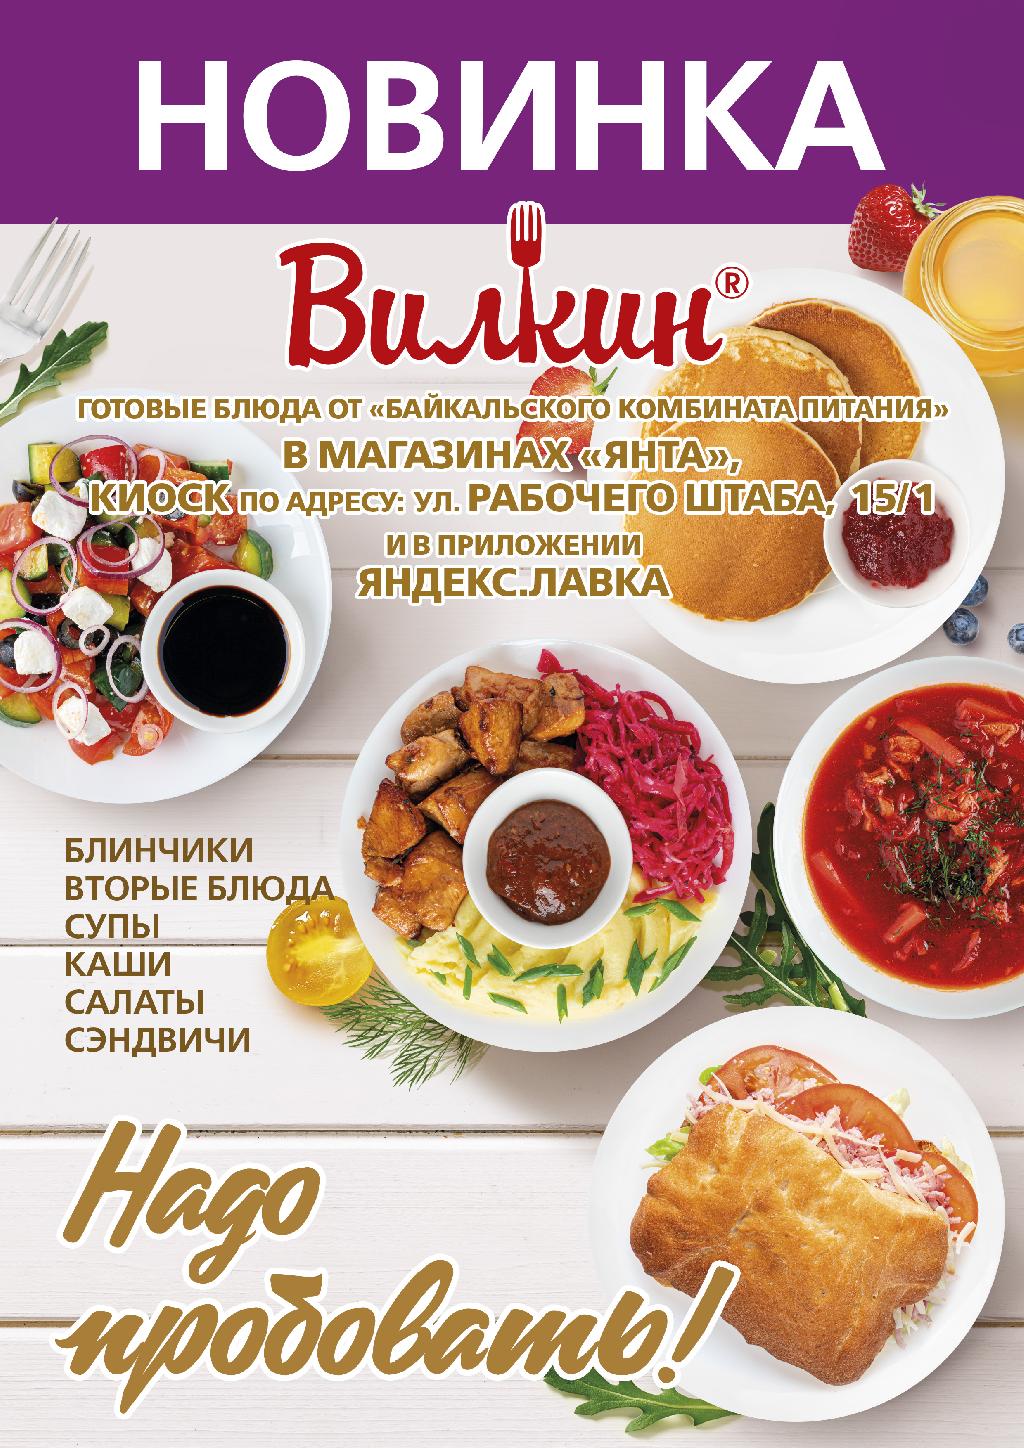 Готовые блюда "Вилкин" от Байкальского комбината питания в магазинах "Янта"